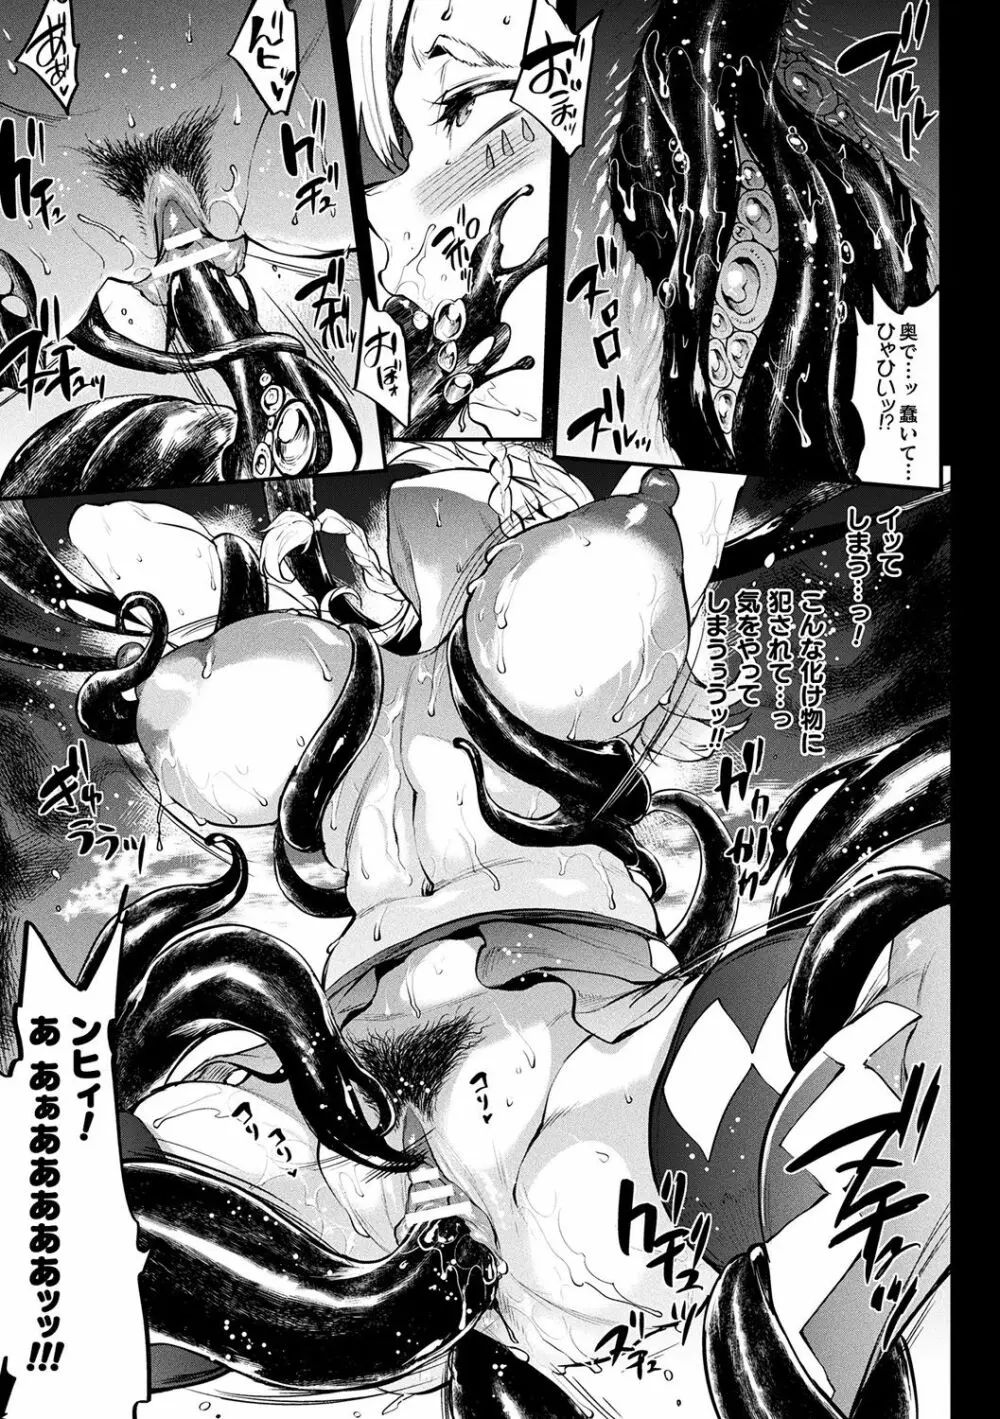 [エレクトさわる] 雷光神姫アイギスマギアII -PANDRA saga 3rd ignition- + 電子書籍特典デジタルポスター [DL版] 163ページ